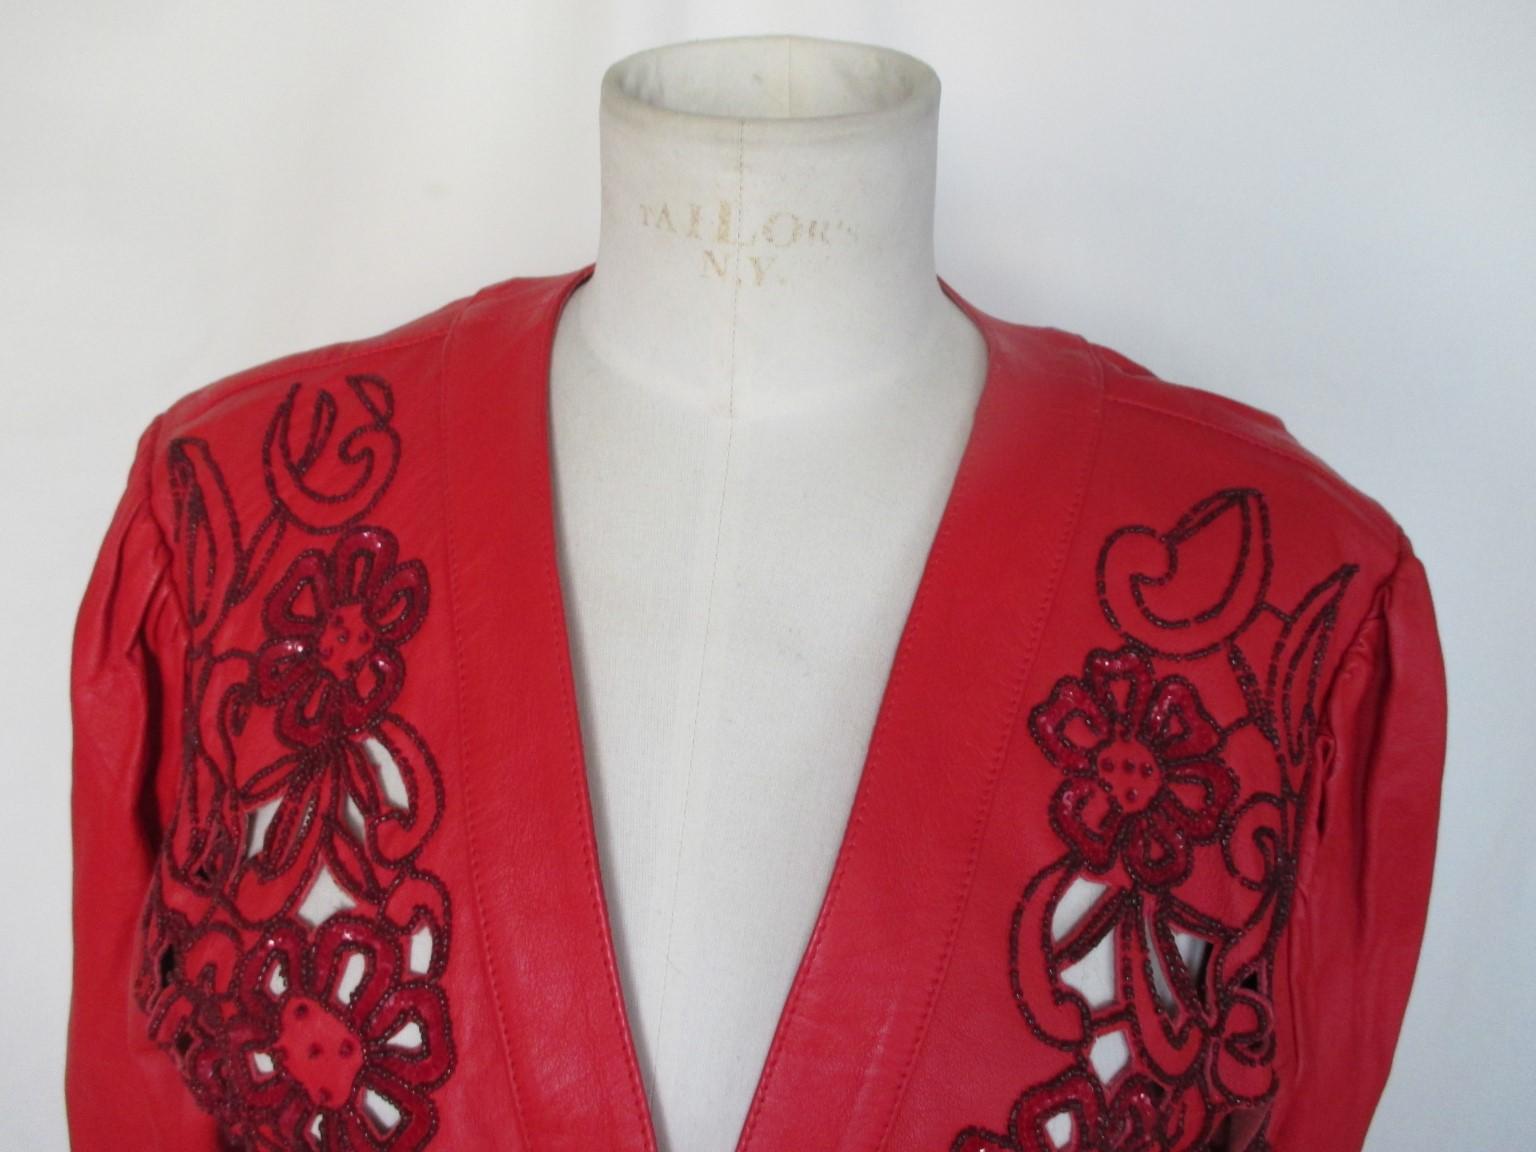 Il s'agit d'une veste boléro en cuir rouge vintage unique. 

Nous proposons d'autres articles exclusifs, consultez notre boutique en ligne.

Détails :
Broderie fleurie ouverte sur le devant en cuir avec perles, se porte comme un boléro.
Vers les